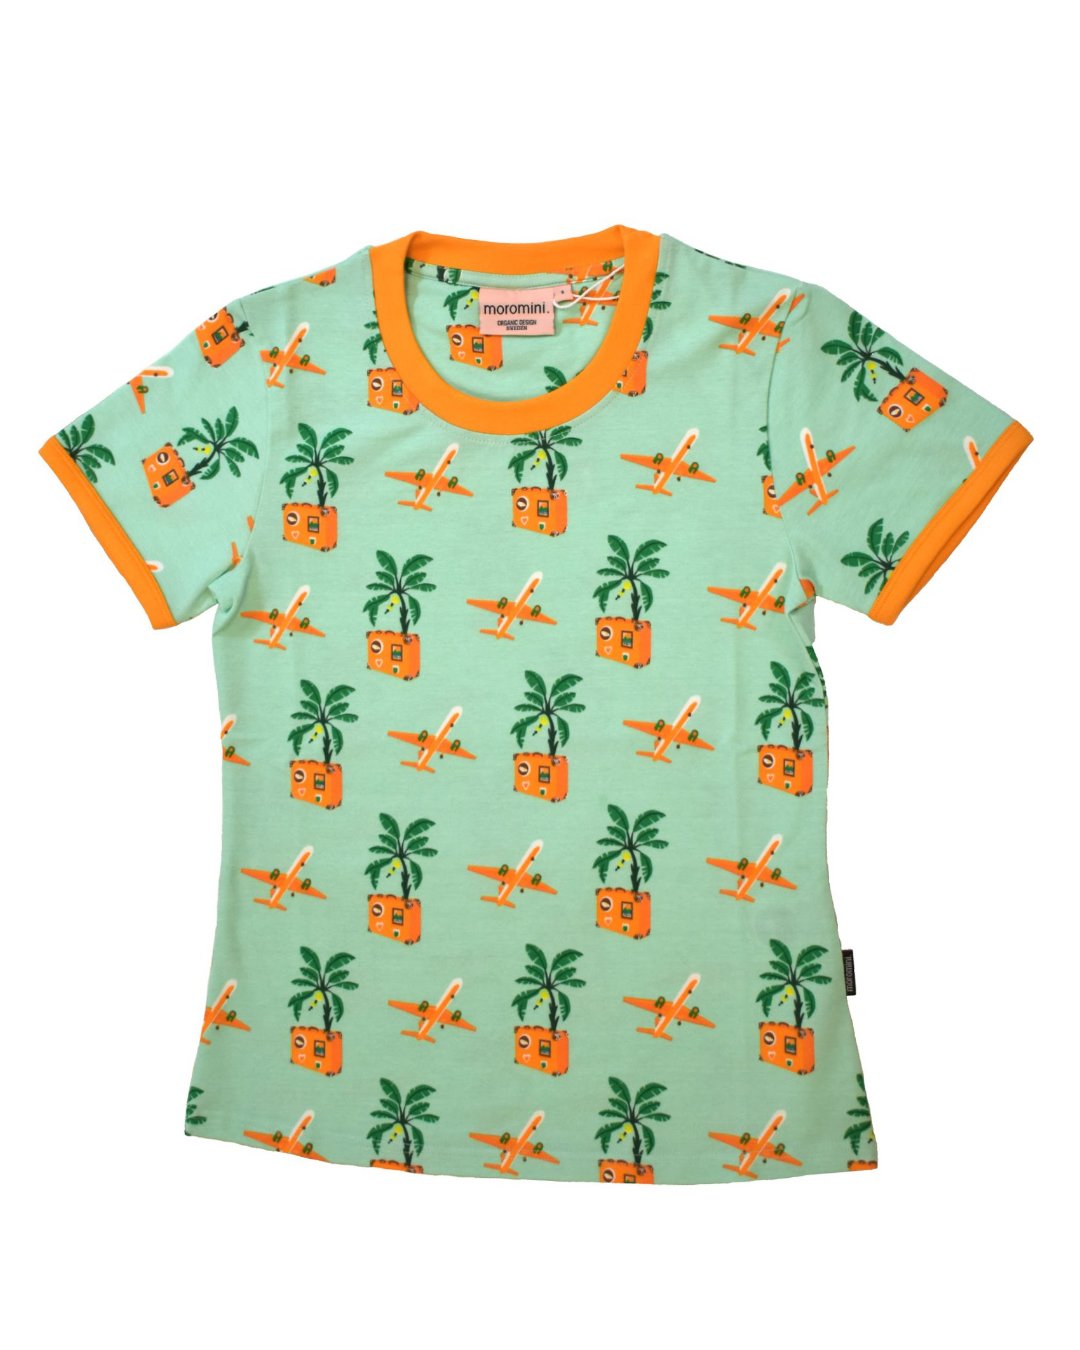 Grünes T-Shirt für Damen mit Koffer Flugzeugen und Palmen in orange von moromini